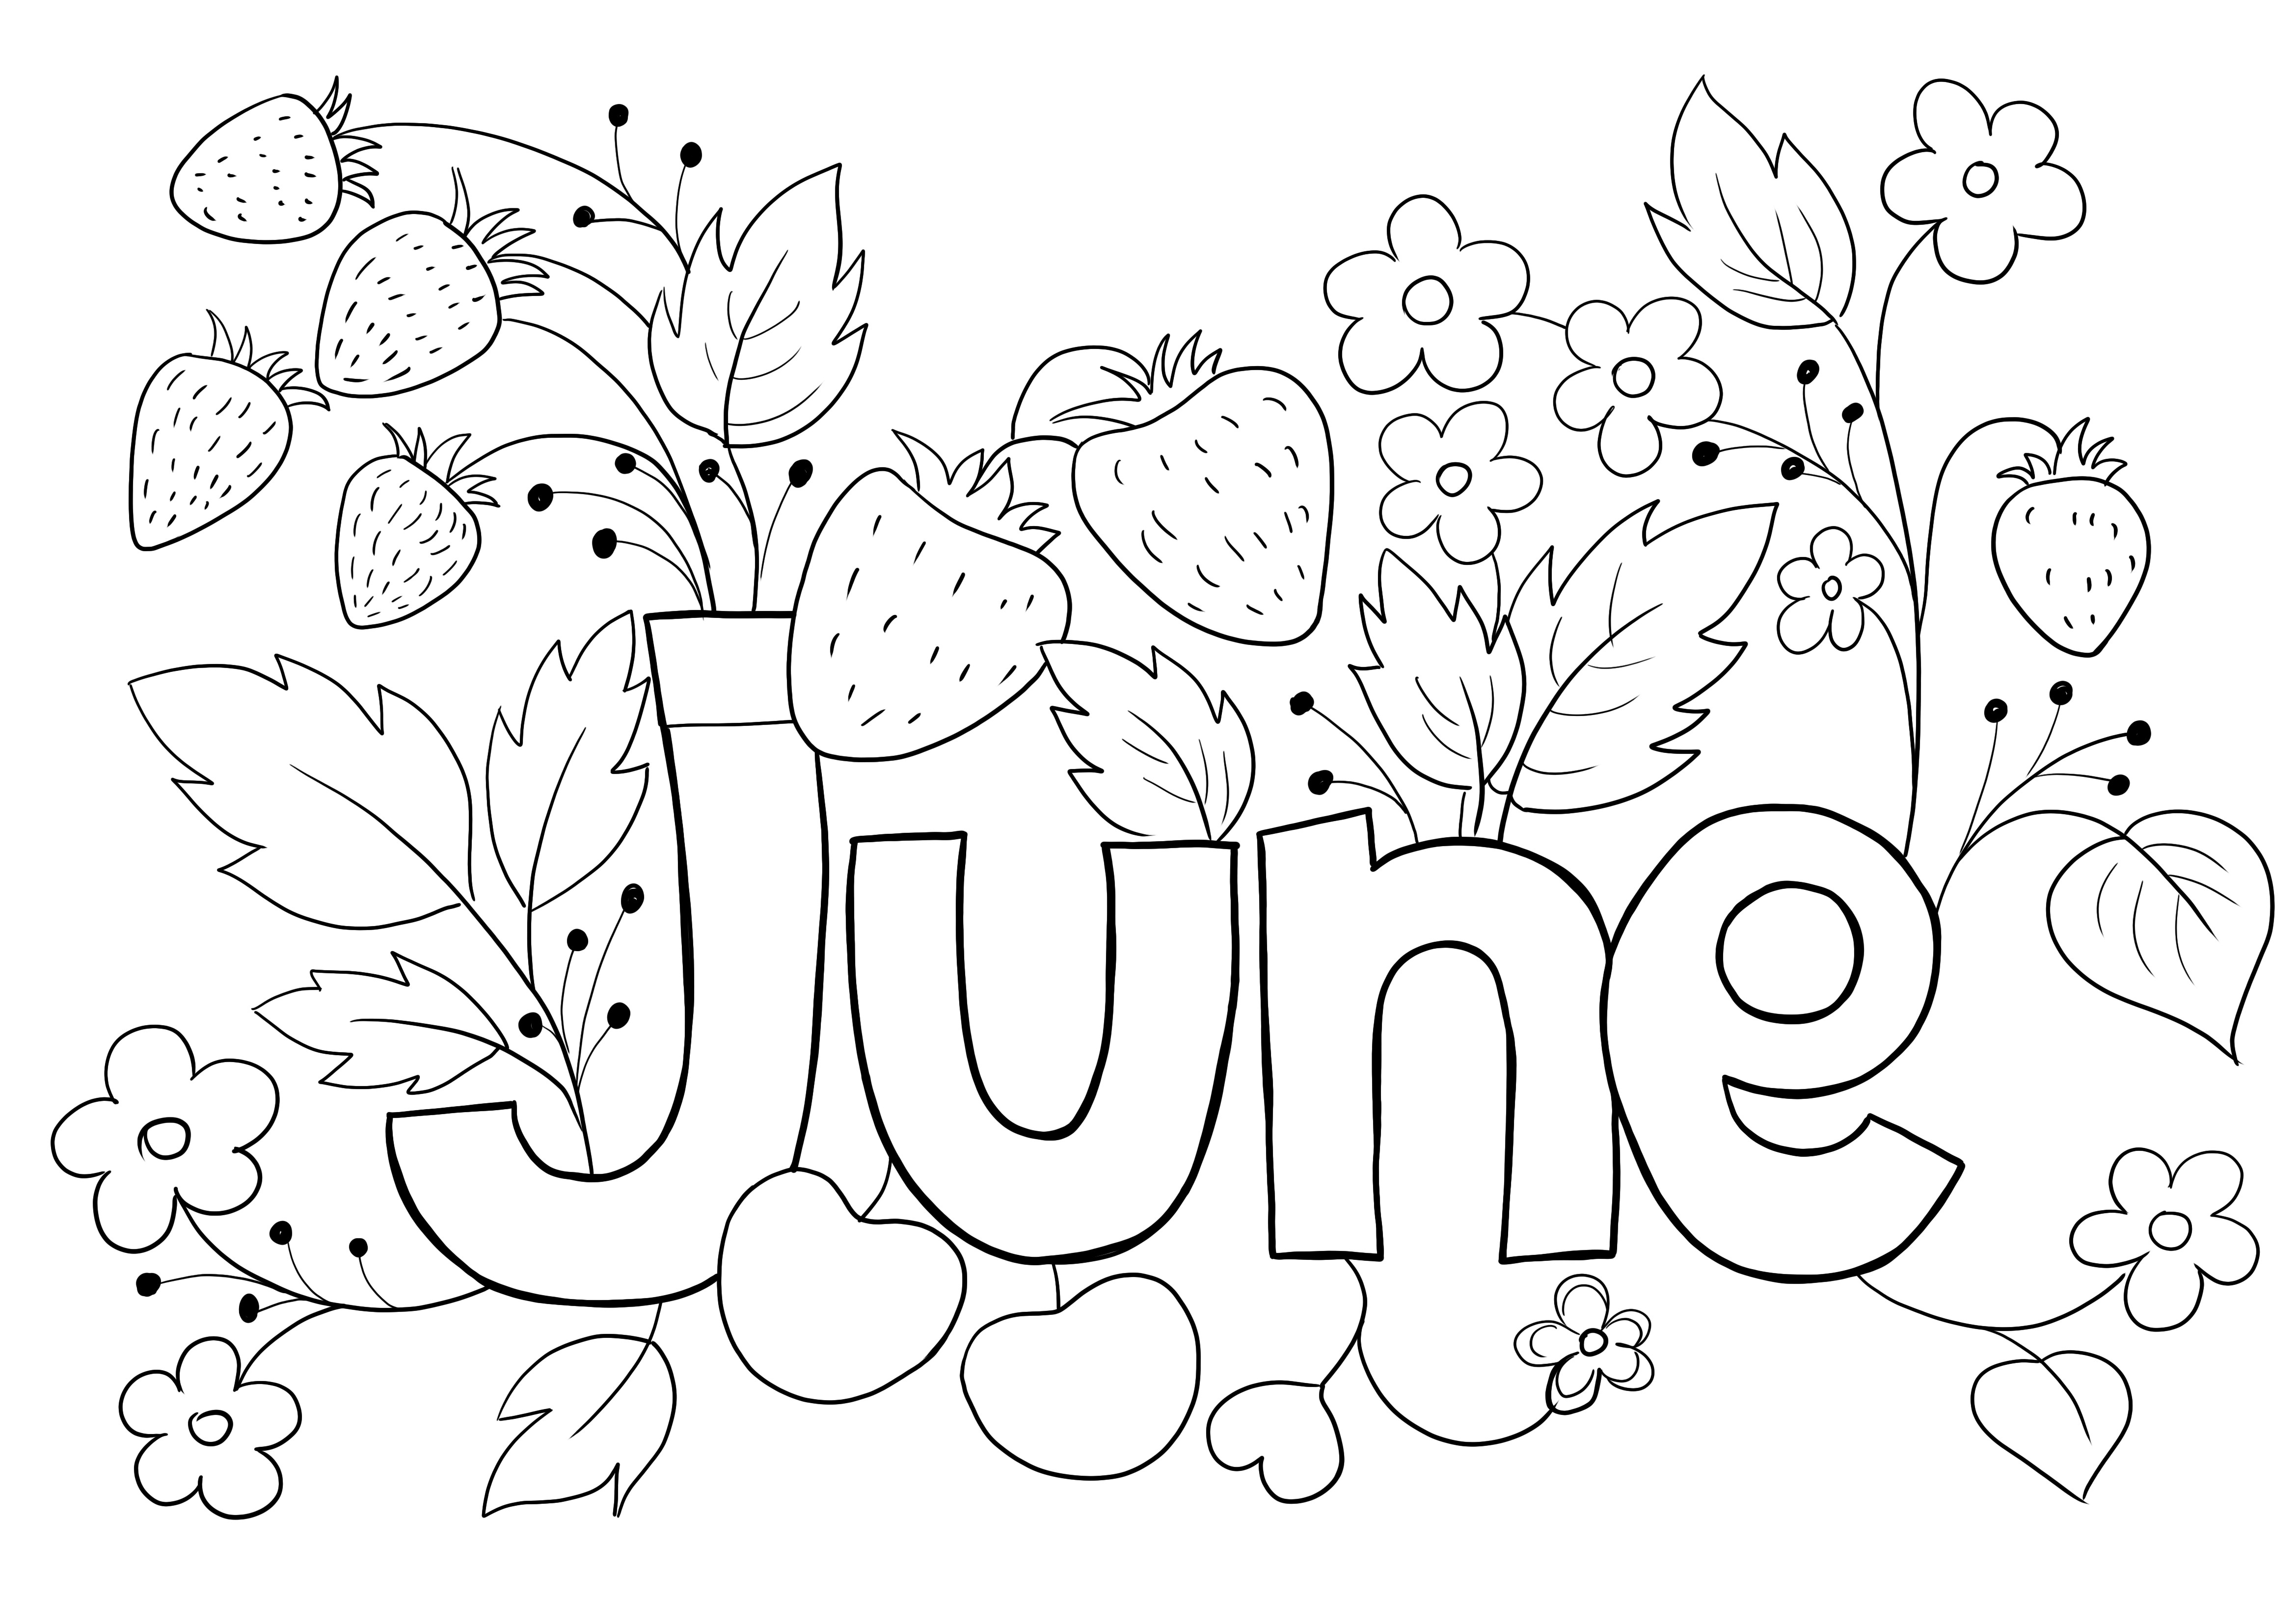 Kleurplaat juni maand zomerseizoen gratis om af te drukken kleurplaat